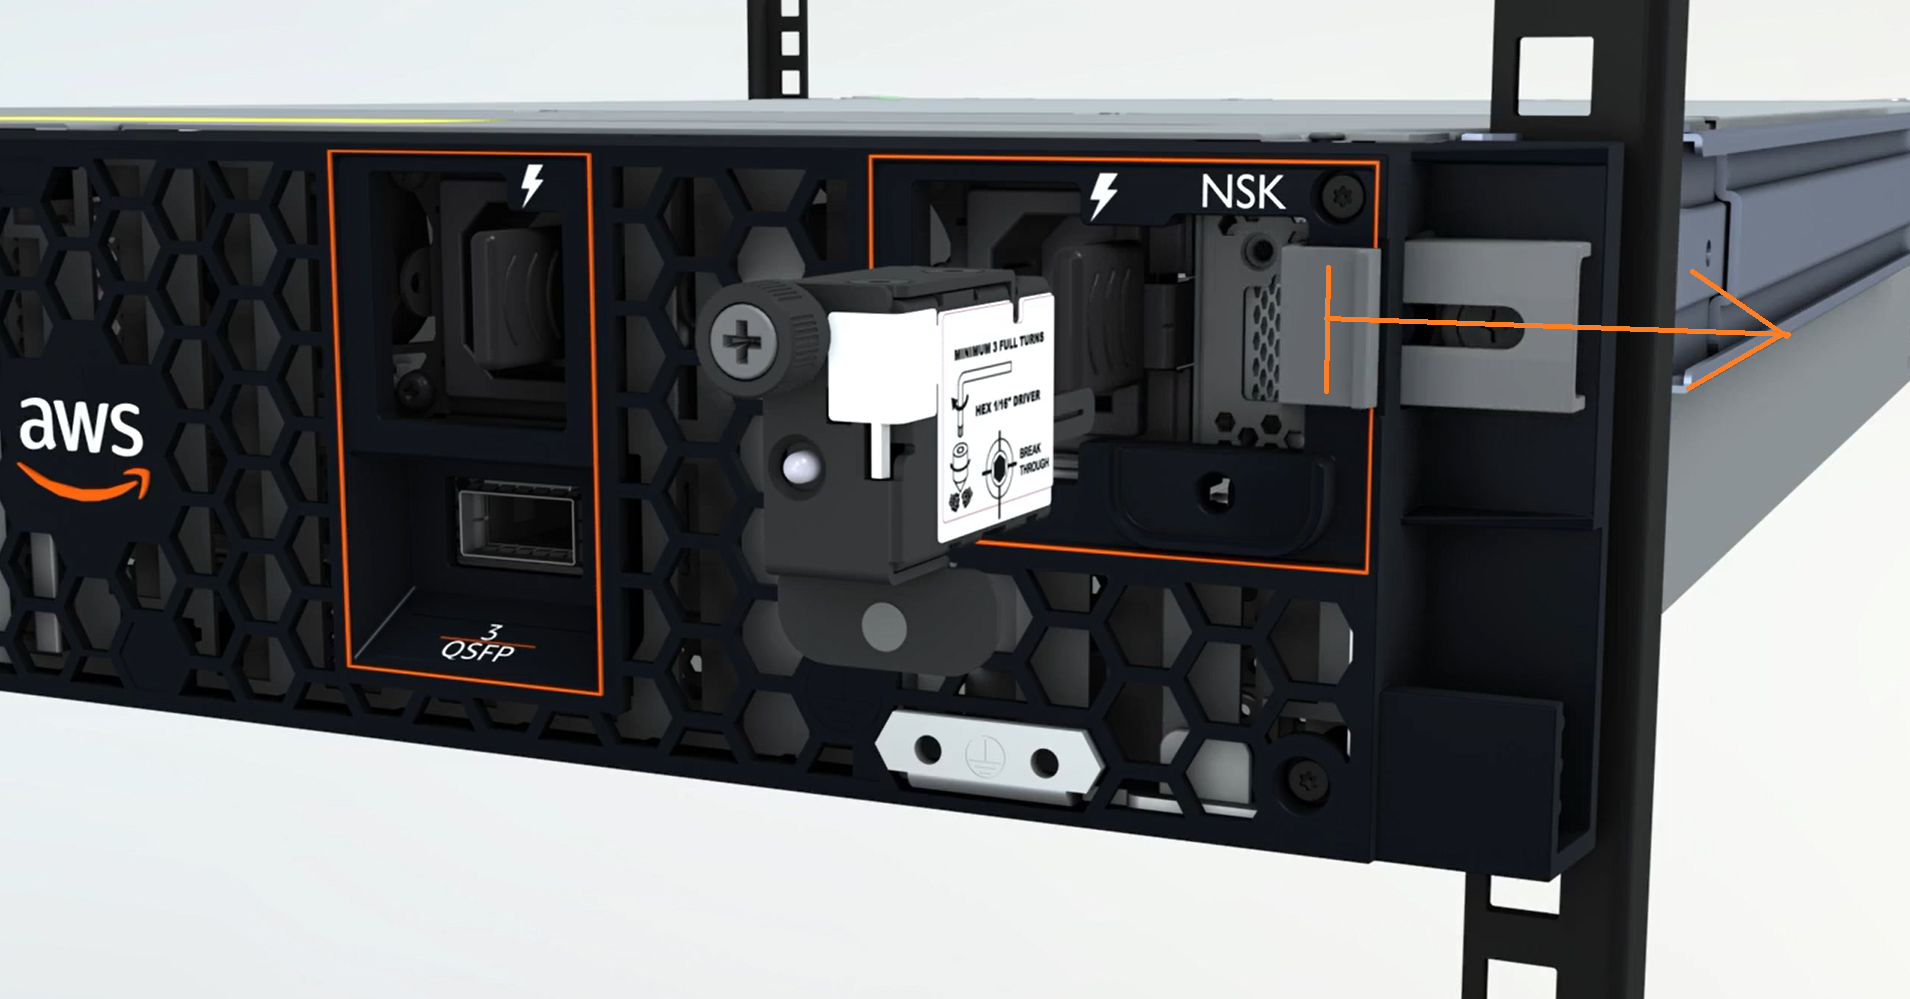 
                  NSKが2Uサーバーに接続されている画像。
                